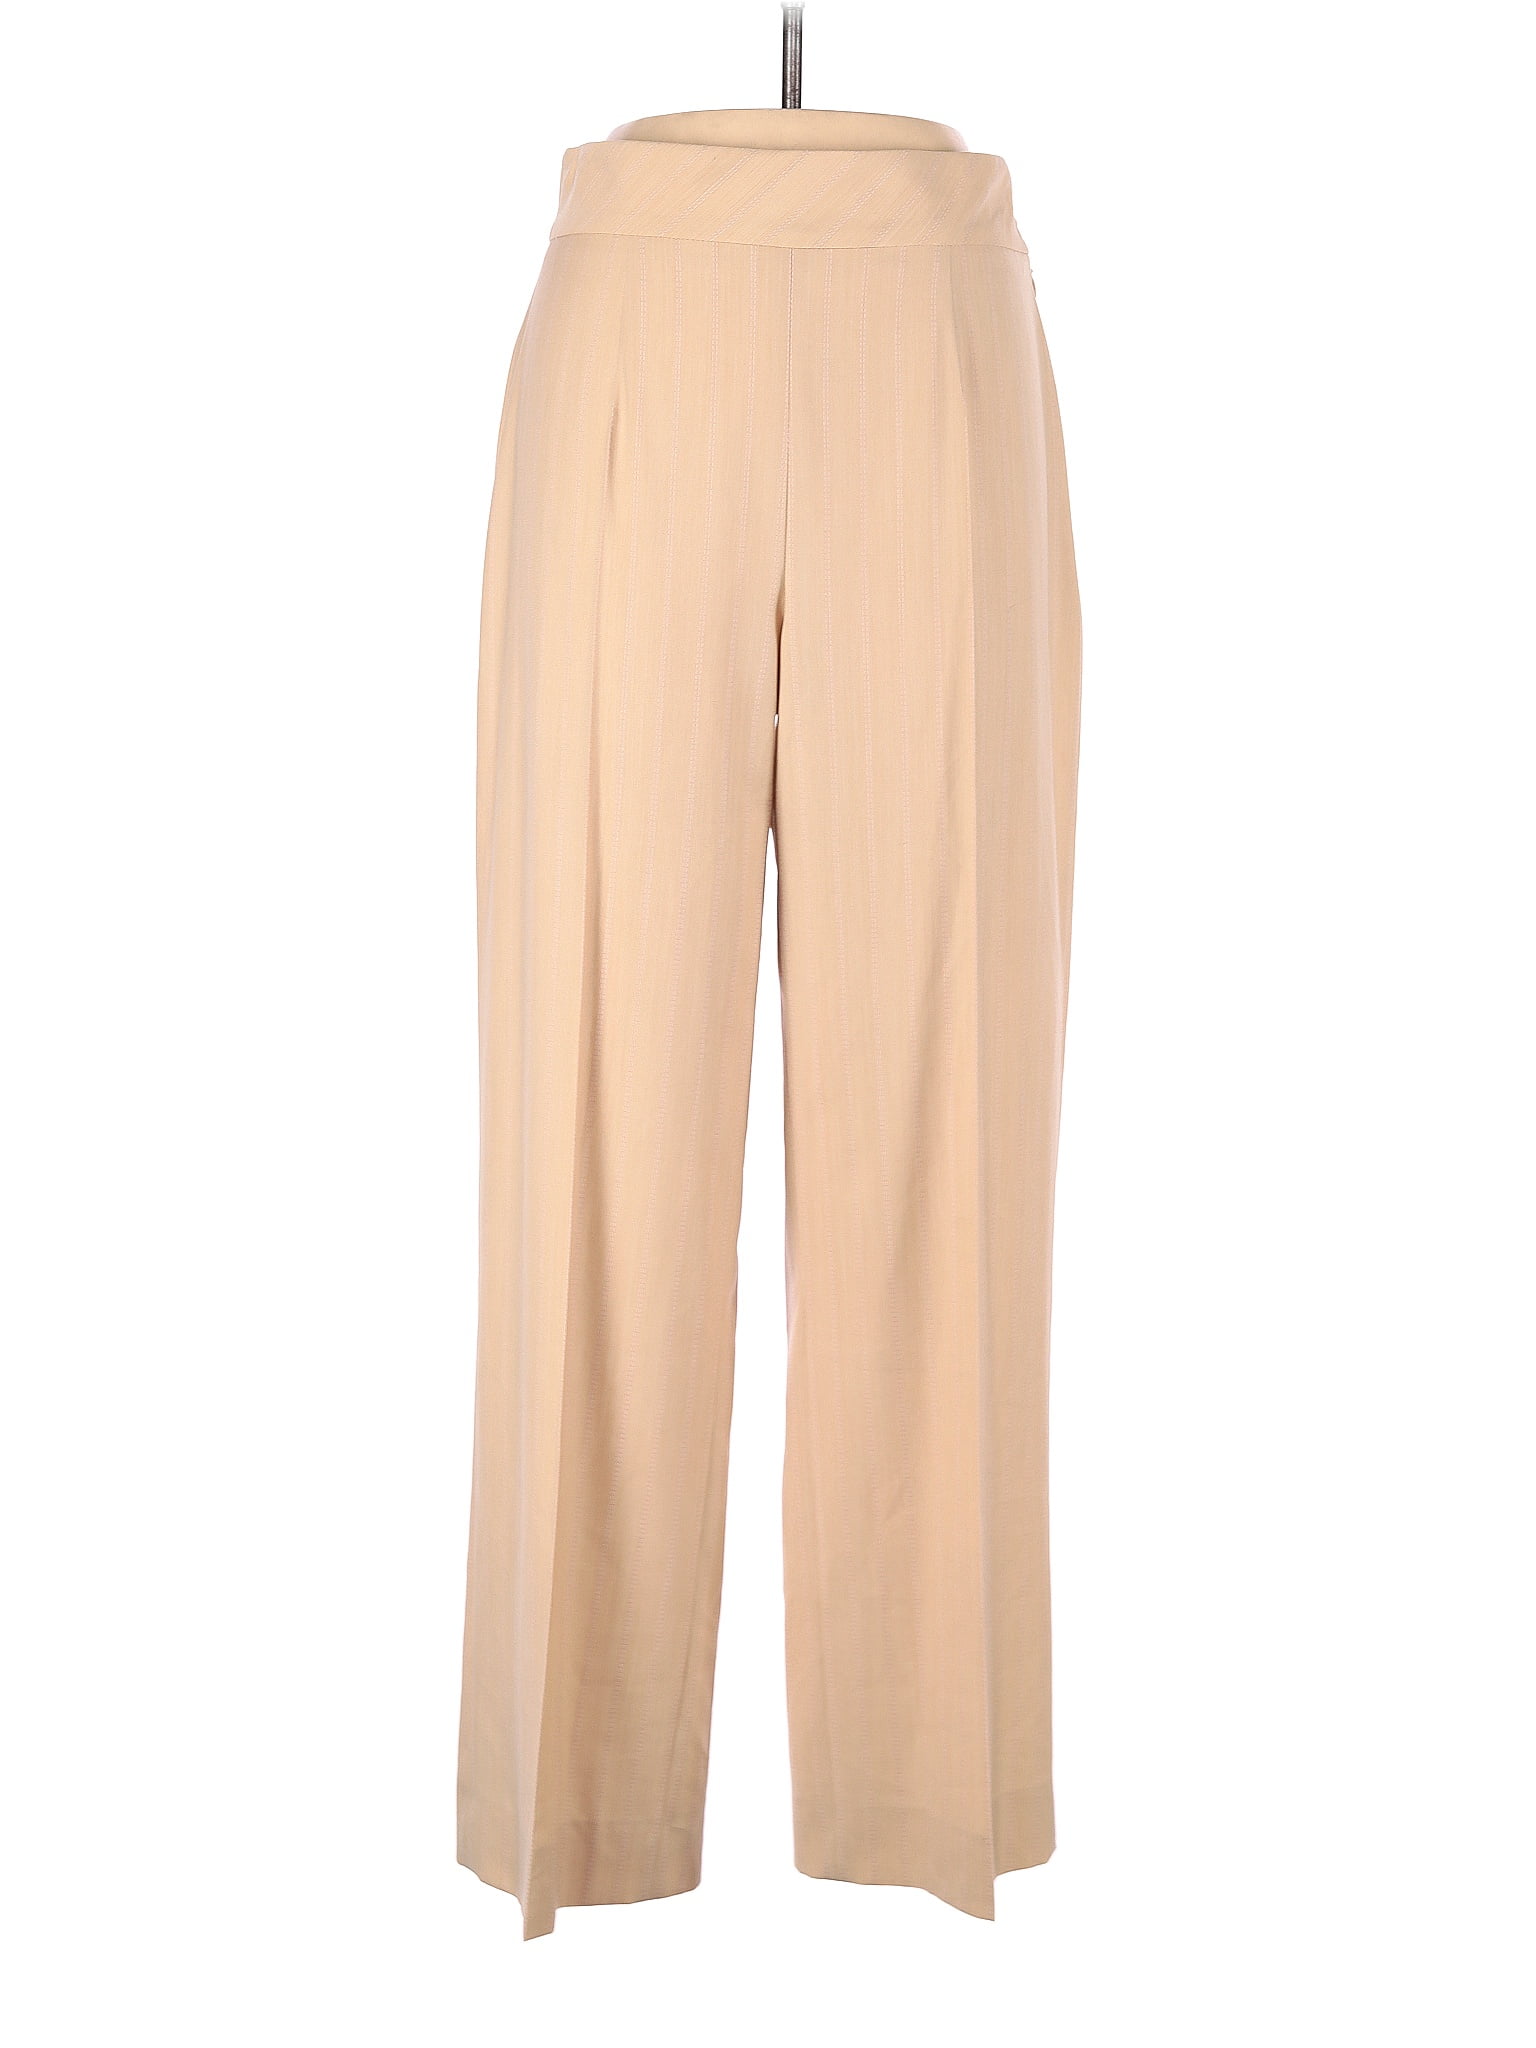 Escada Solid Tan Dress Pants Size 40 (EU) - 93% off | thredUP